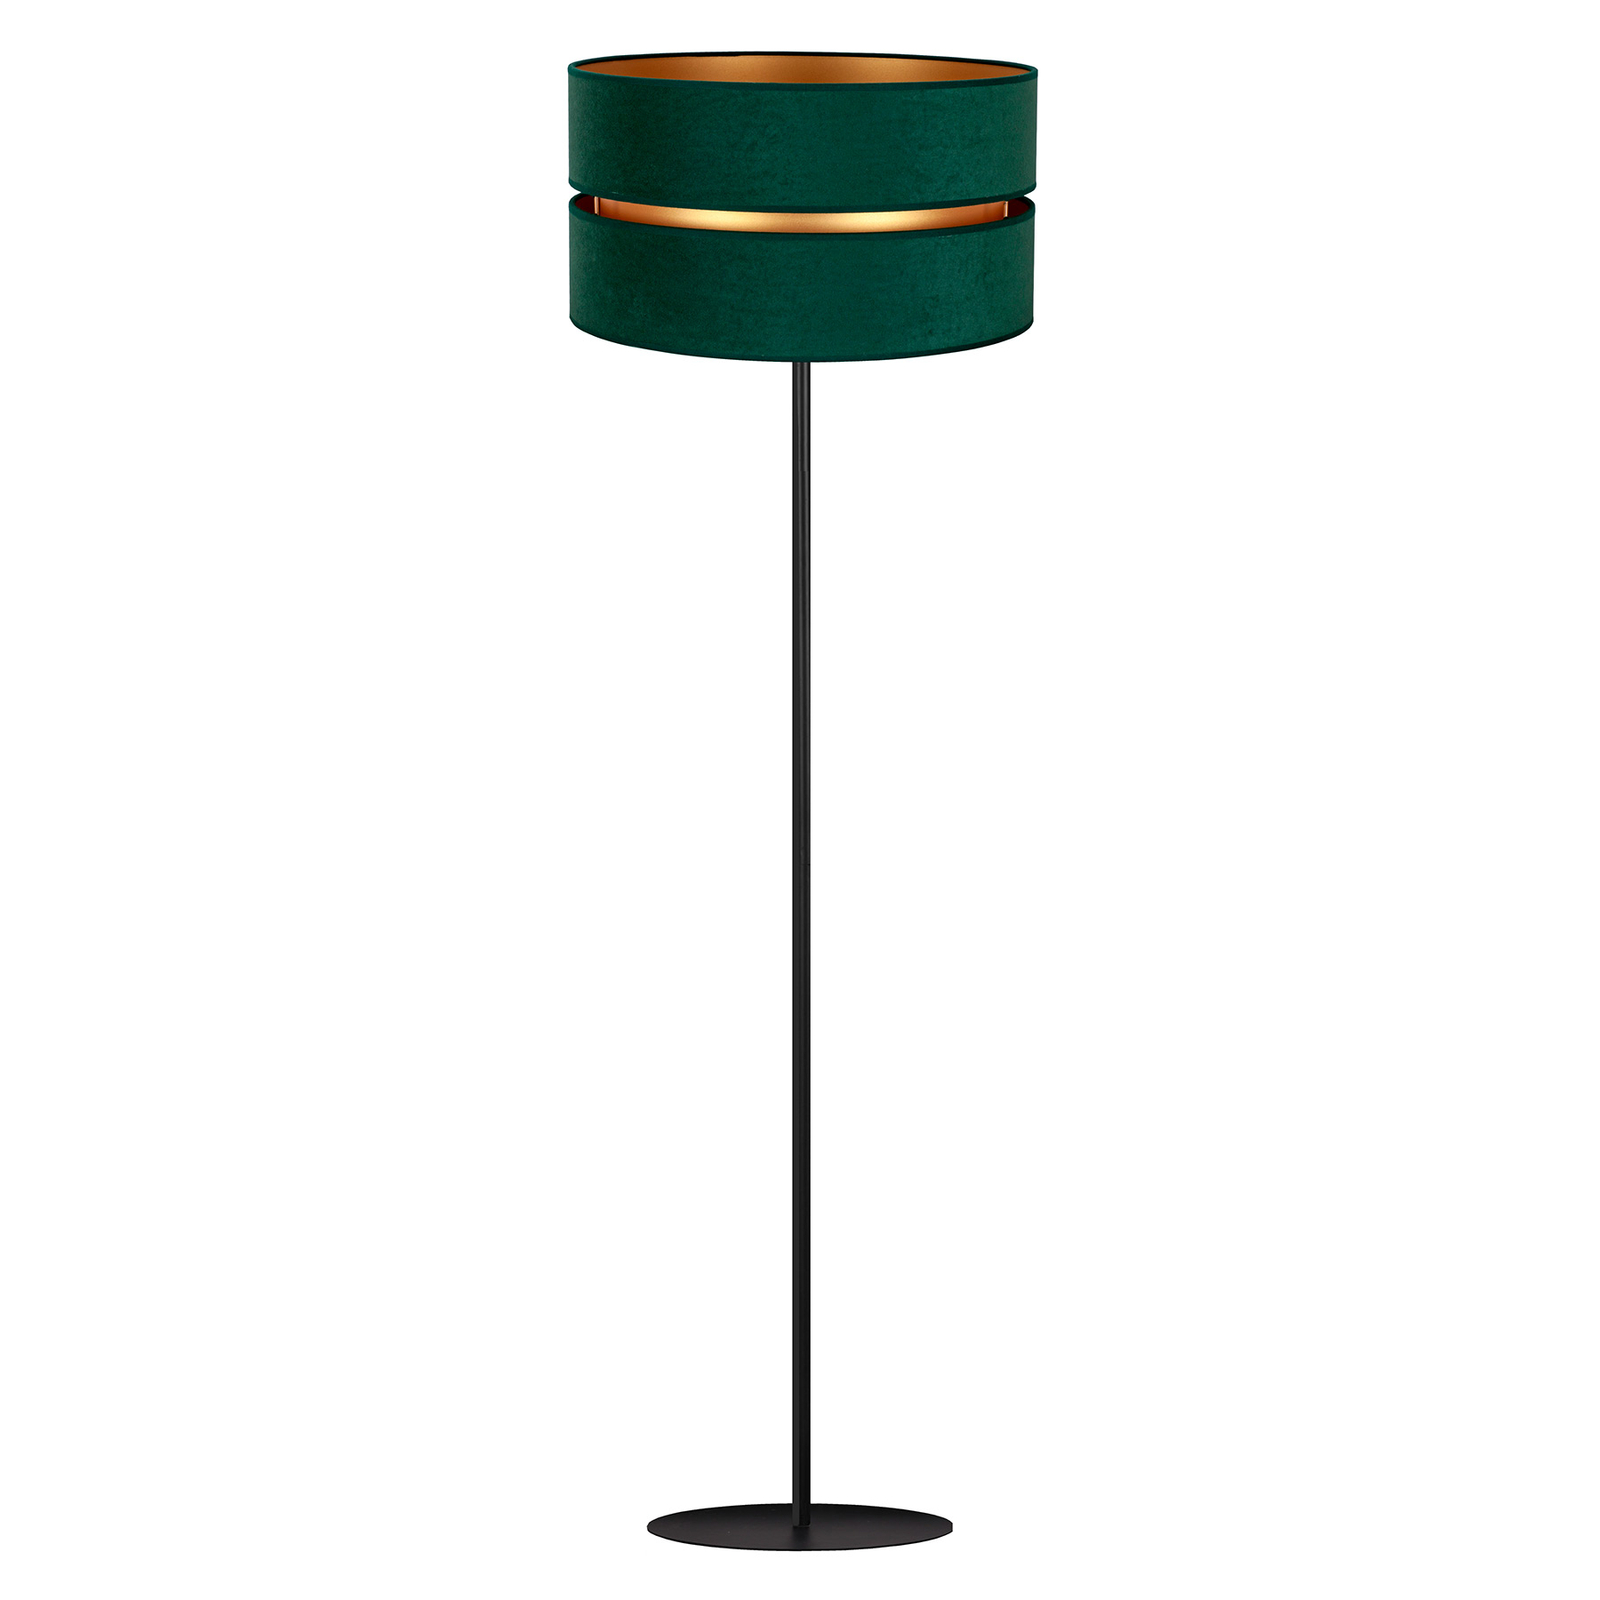 Lampa stojąca Duo, zielona/złota Ø 40 cm 1-pkt.